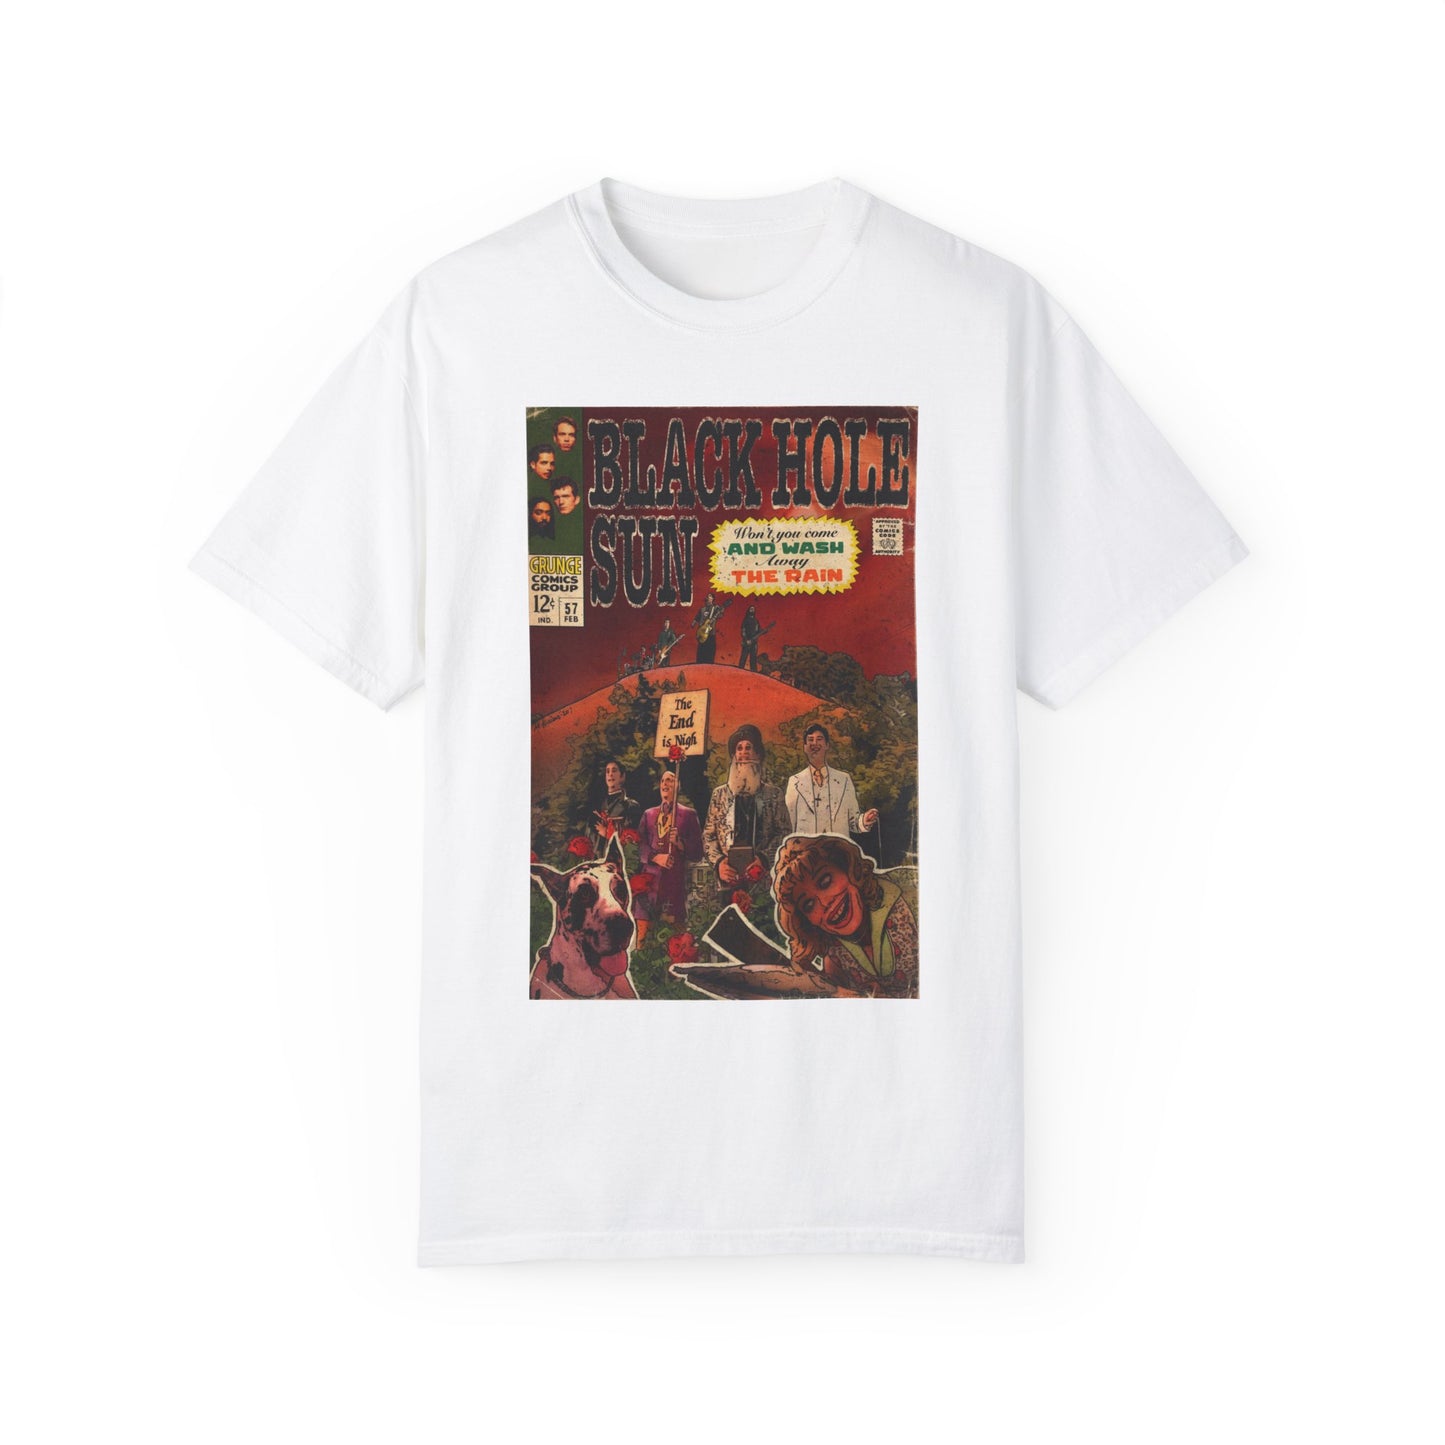 Soundgarden - Black Hole Sun - Unisex Comfort Color T-shirt